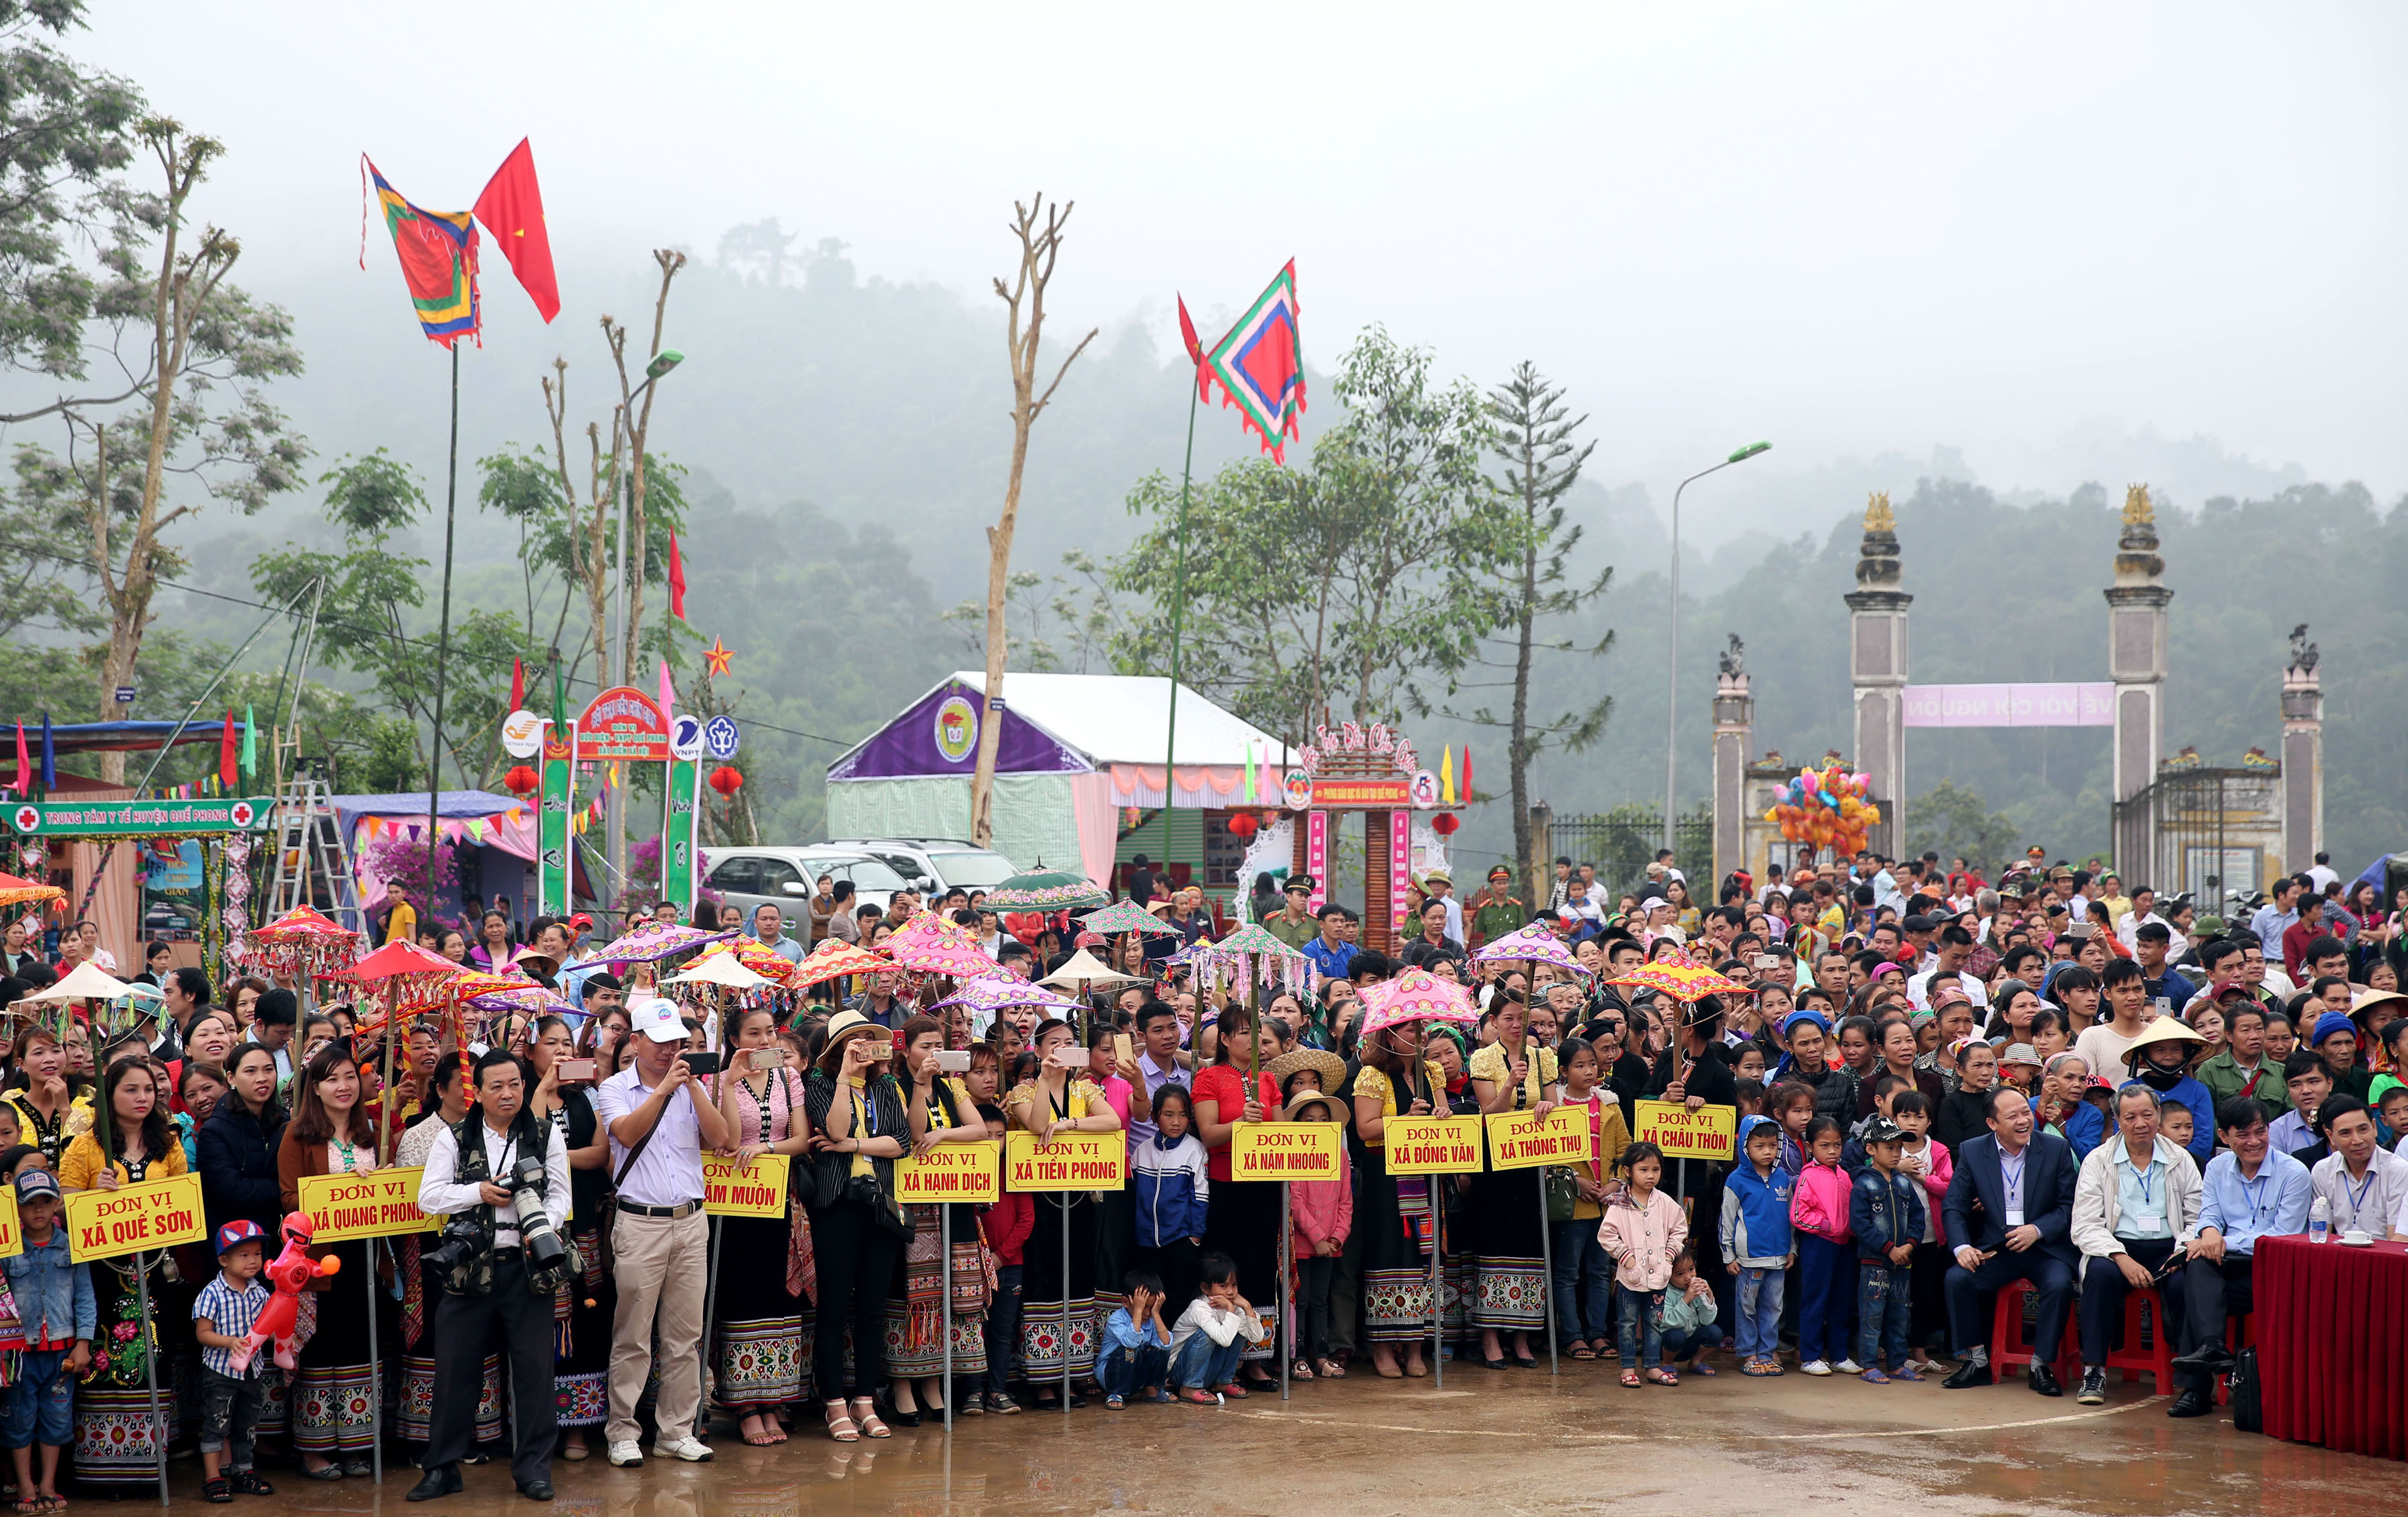 Lễ hội Đền Chín Gian là sinh hoạt văn hóa tinh thần lâu đời của người Thái của phủ Quỳ Châu xưa. Lễ hội được phục dựng và tổ chức thường xuyên từ năm 2014. Ảnh : Hồ Phương